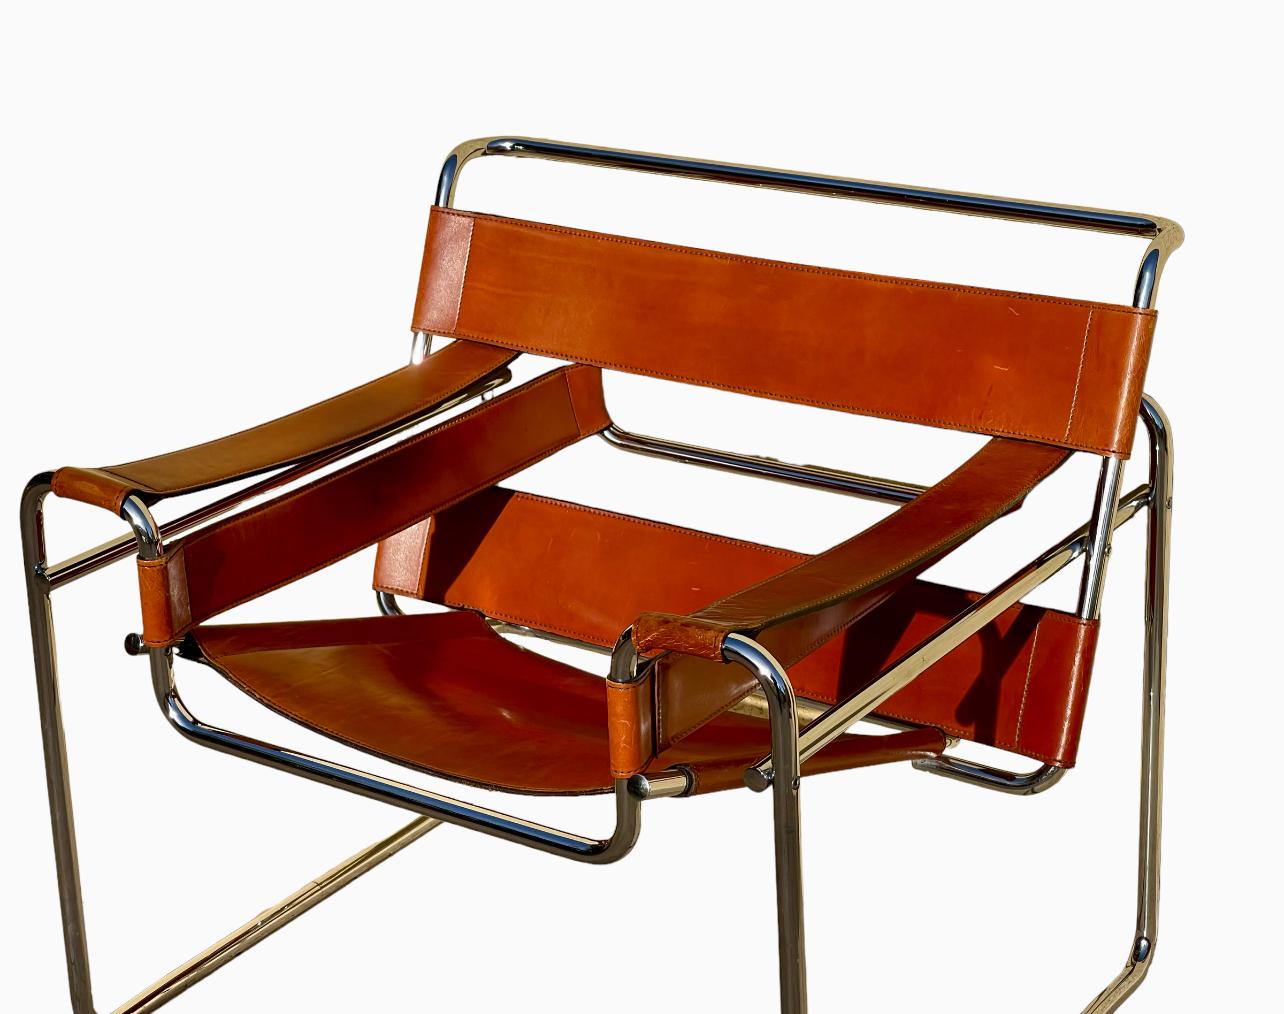 Superbe chaise Wassily avec cuir cognac d'origine et structure tubulaire en métal plié et chromé. Cette chaise est une réédition datant de 1970. Il est en très bon état, sans tache ni oxydation.

La chaise Wassily, également connue sous le nom de